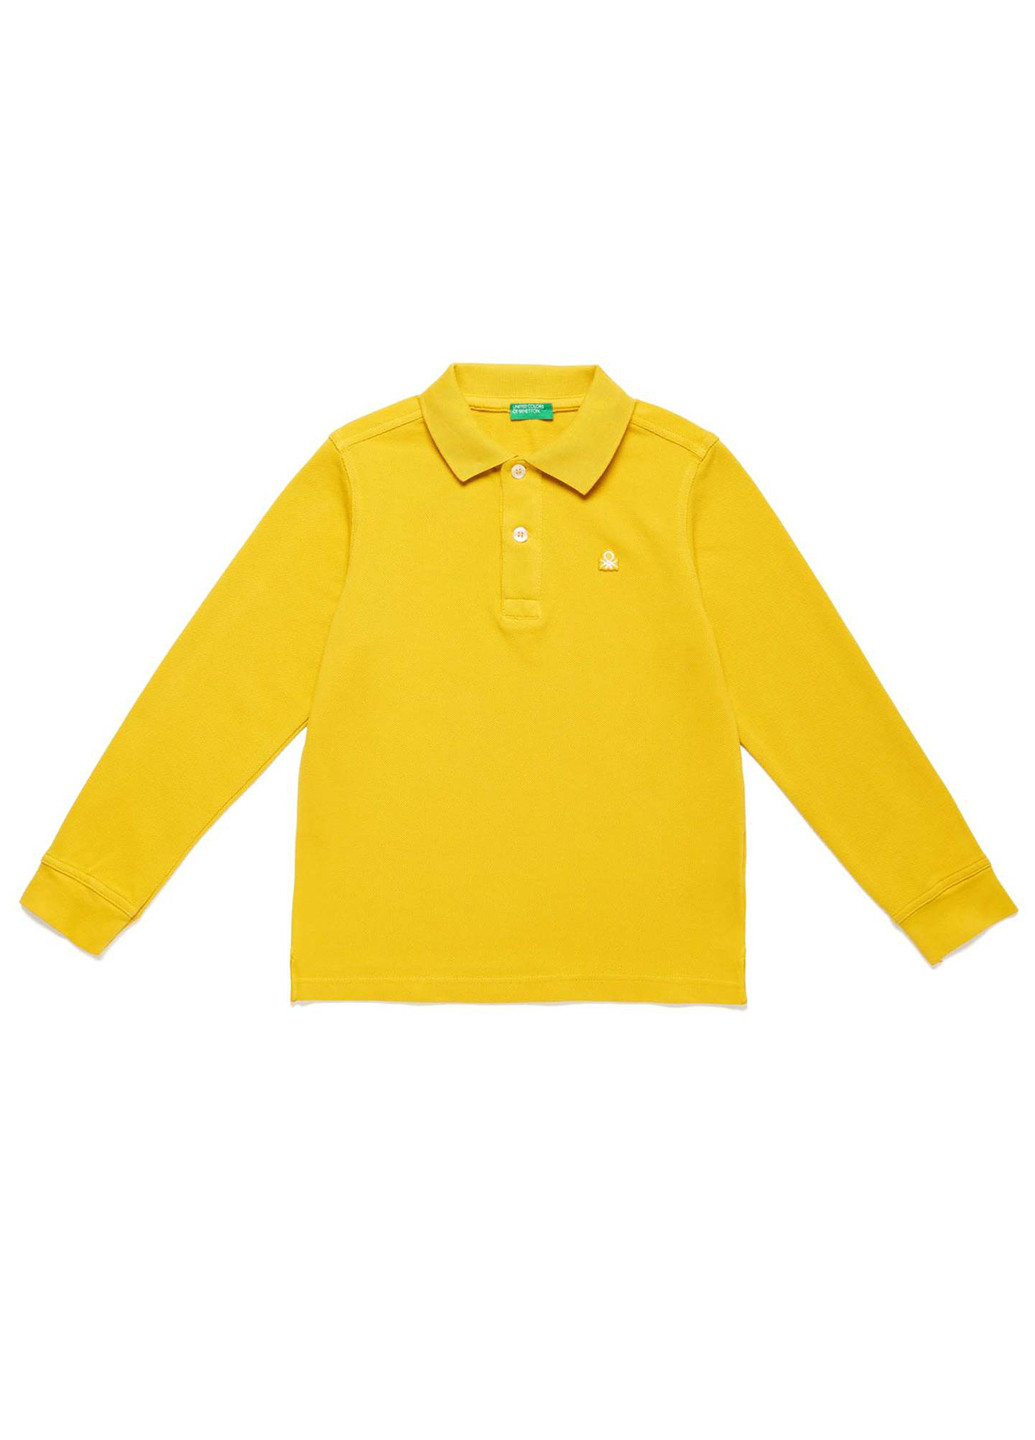 Желтая детская футболка-поло для мальчика United Colors of Benetton с логотипом